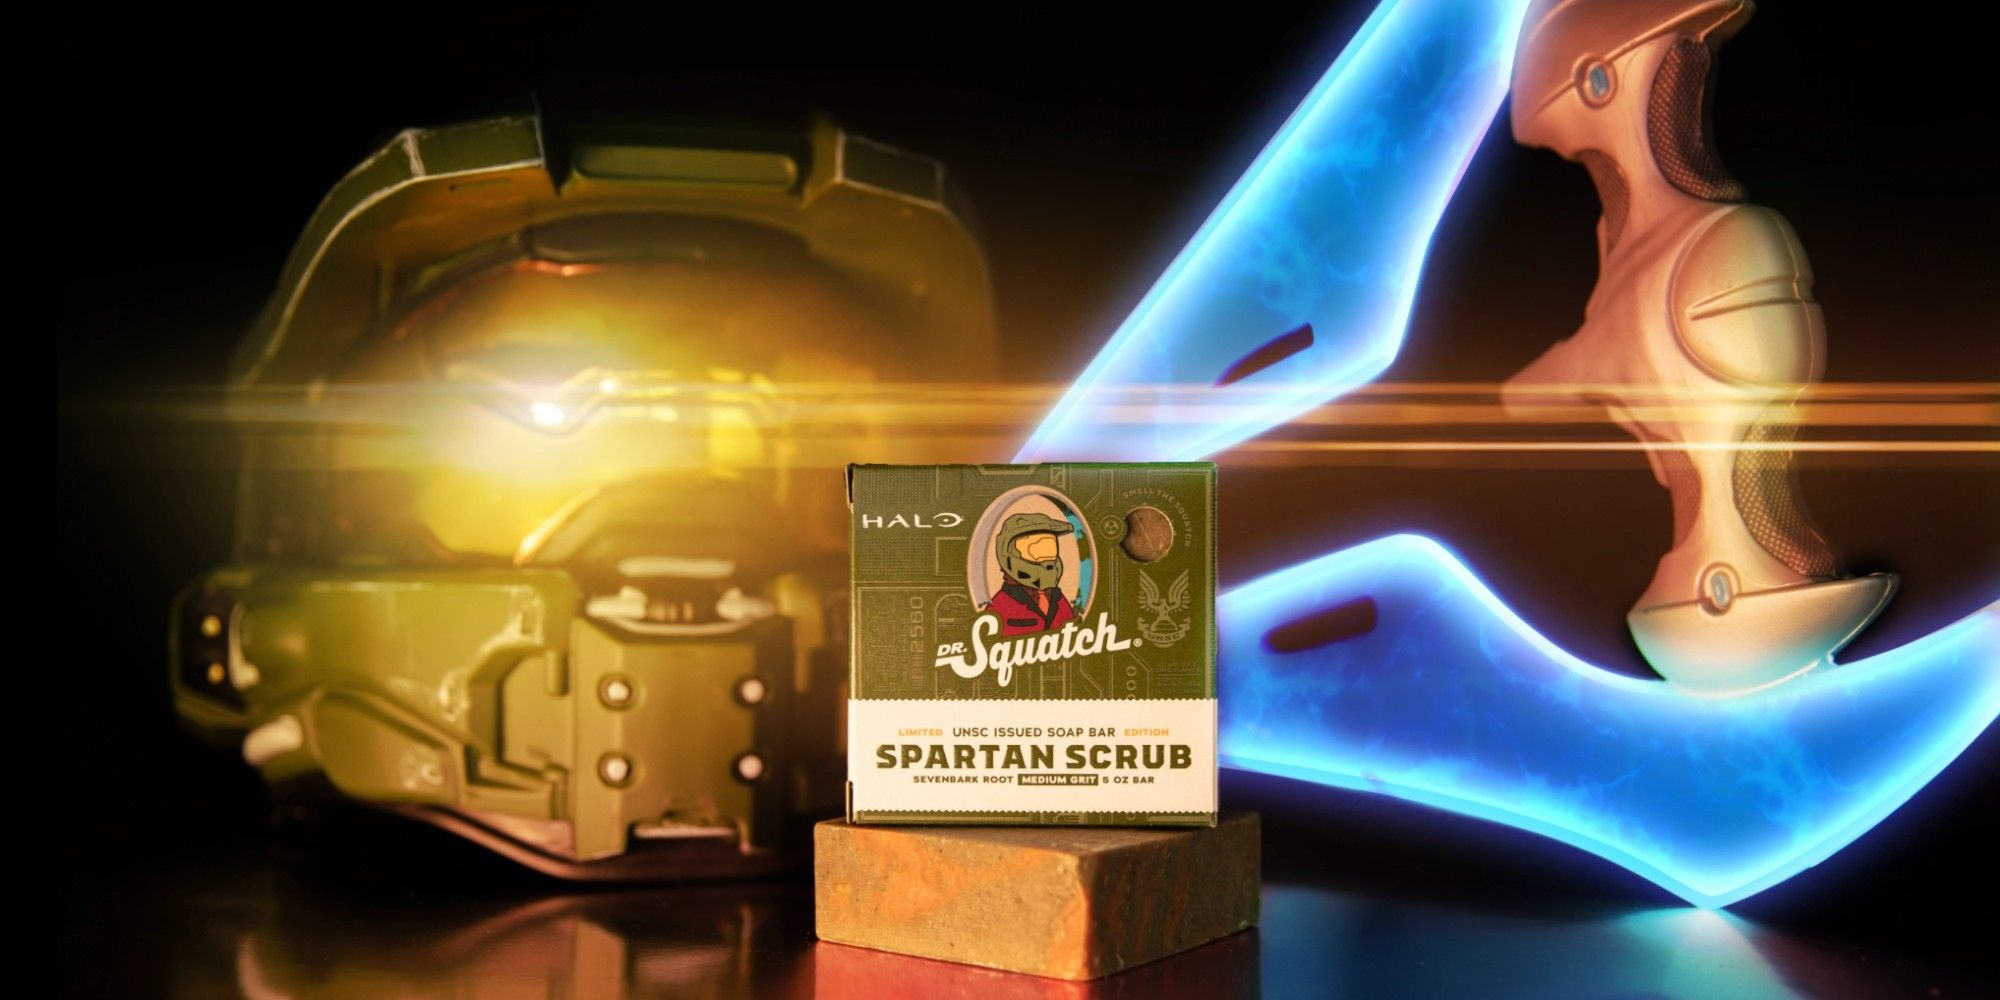 Halo_Dr. Squatch soap